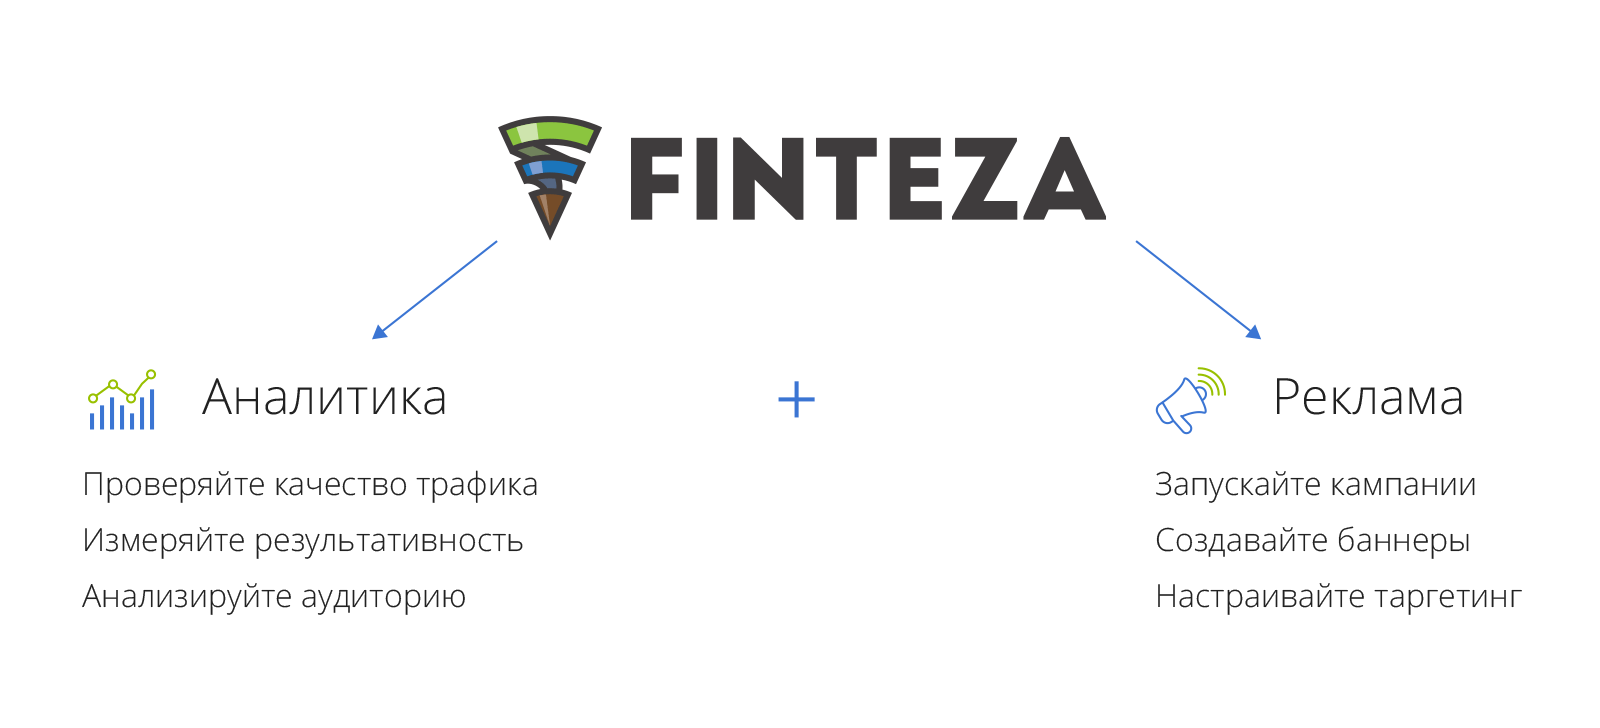 Finteza — это аналитический сервис + рекламный движок